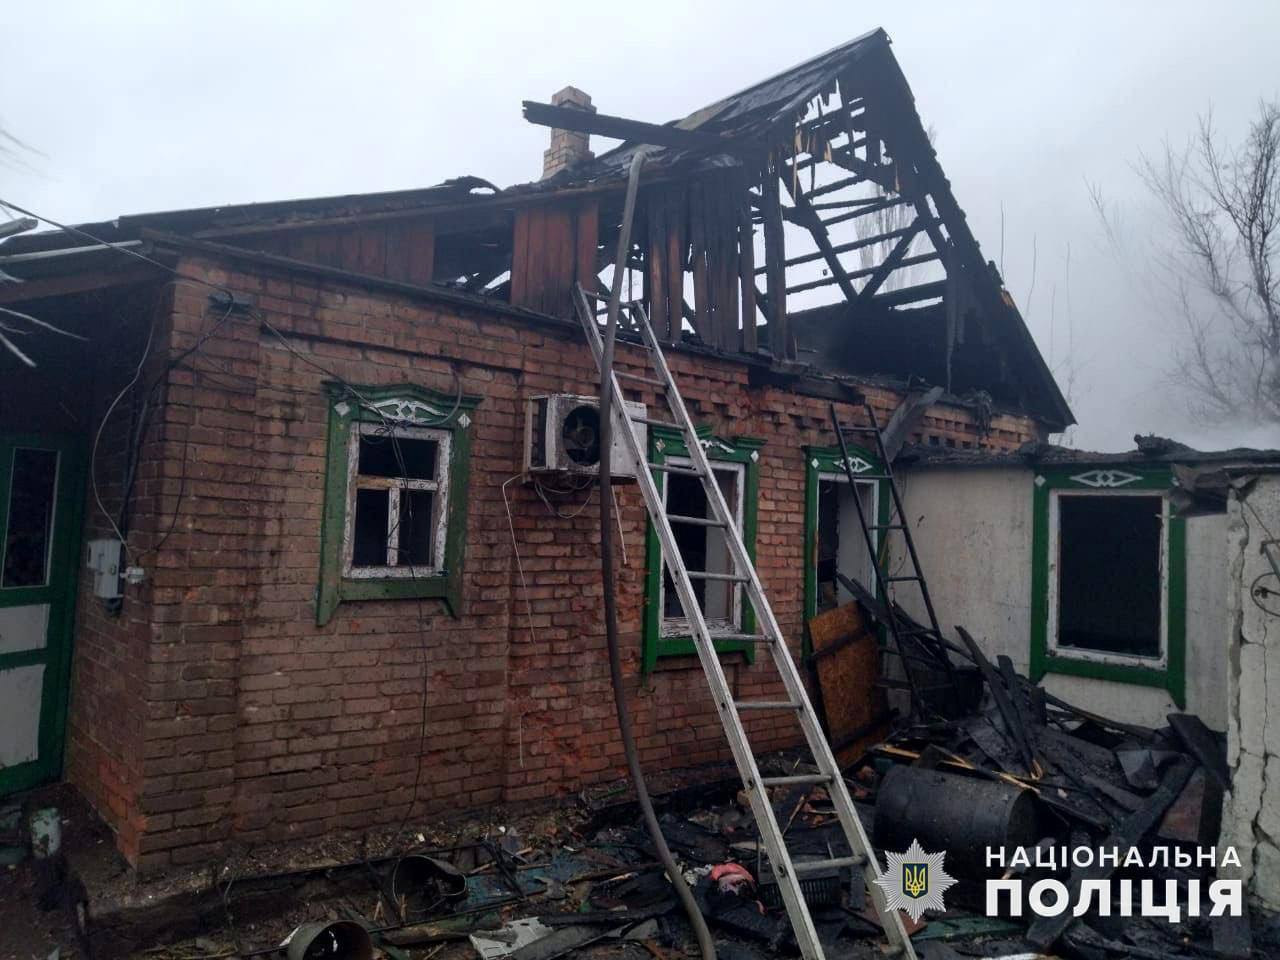 Армія РФ обстріляла Часів Яр: зруйновано два будинки, одна людина загинула